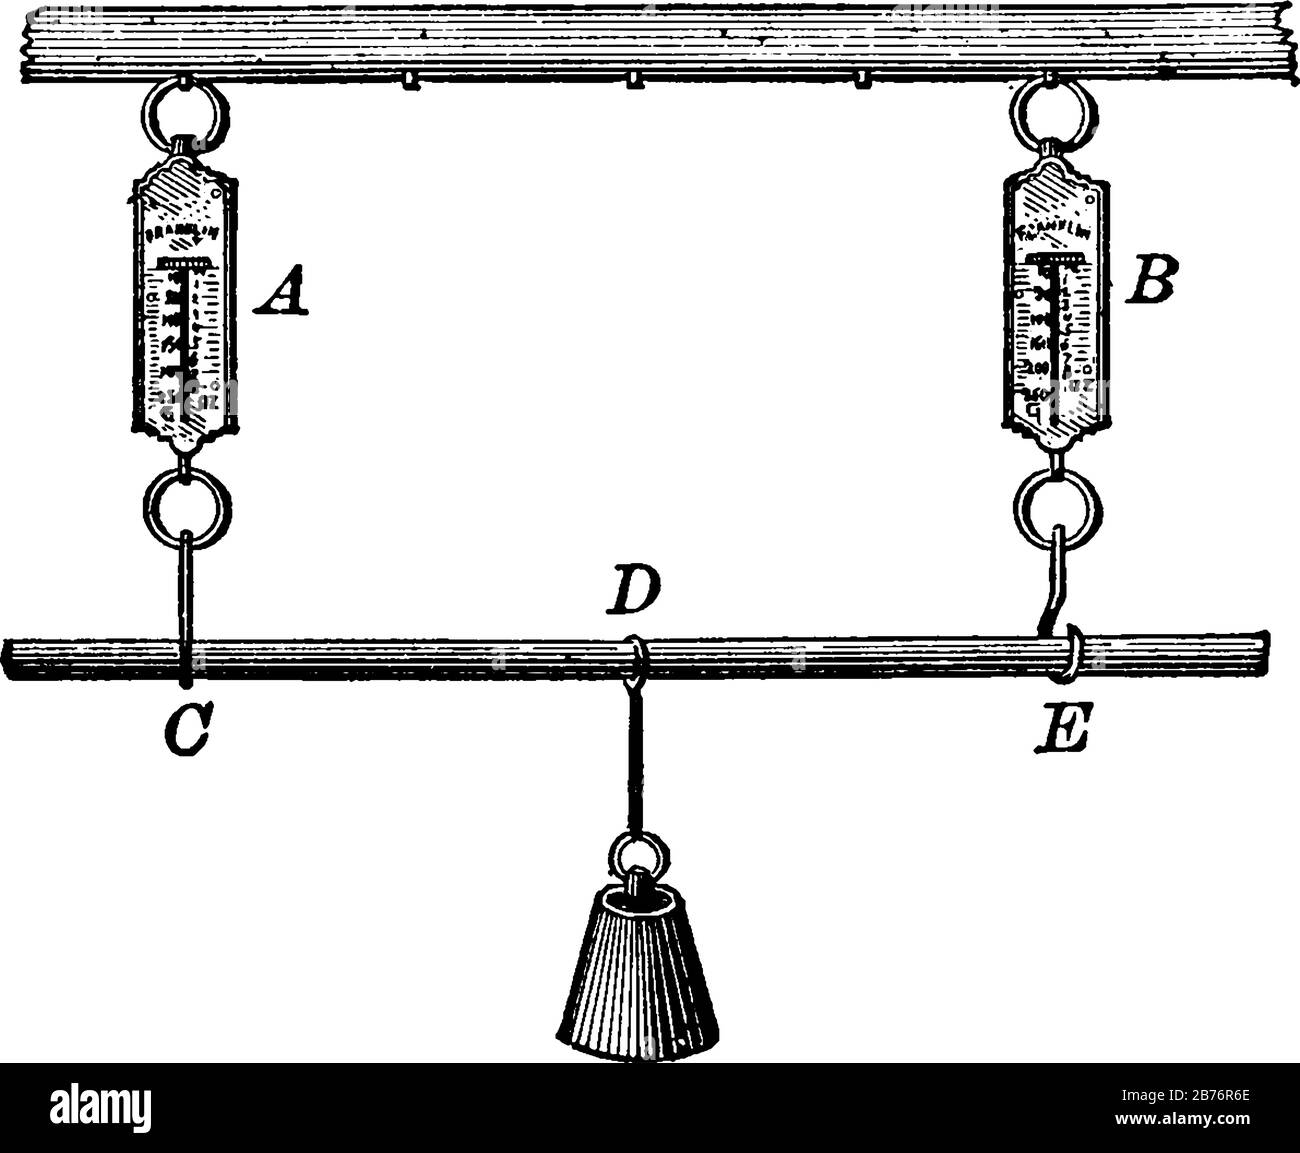 Una bilancia a molla o newton meter è un tipo di bilancia, disegno a linea vintage o illustrazione di incisione. Illustrazione Vettoriale